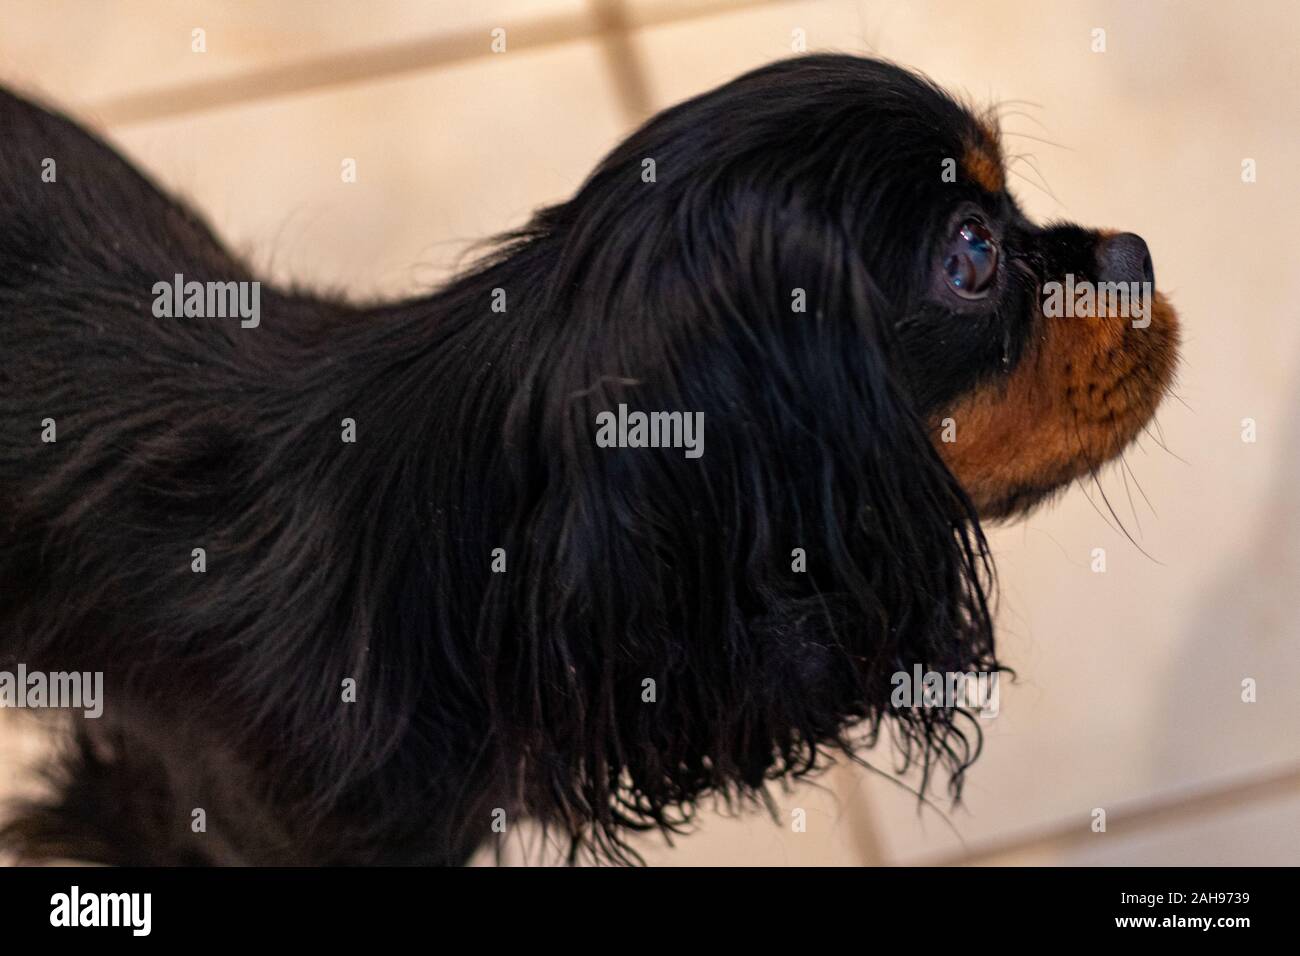 Un Cavalier King Charles Spaniel si vede in una vista di profilo mostra il lato del suo viso. Il cane ha la razza nera e la colorazione marrone chiaro. Foto Stock